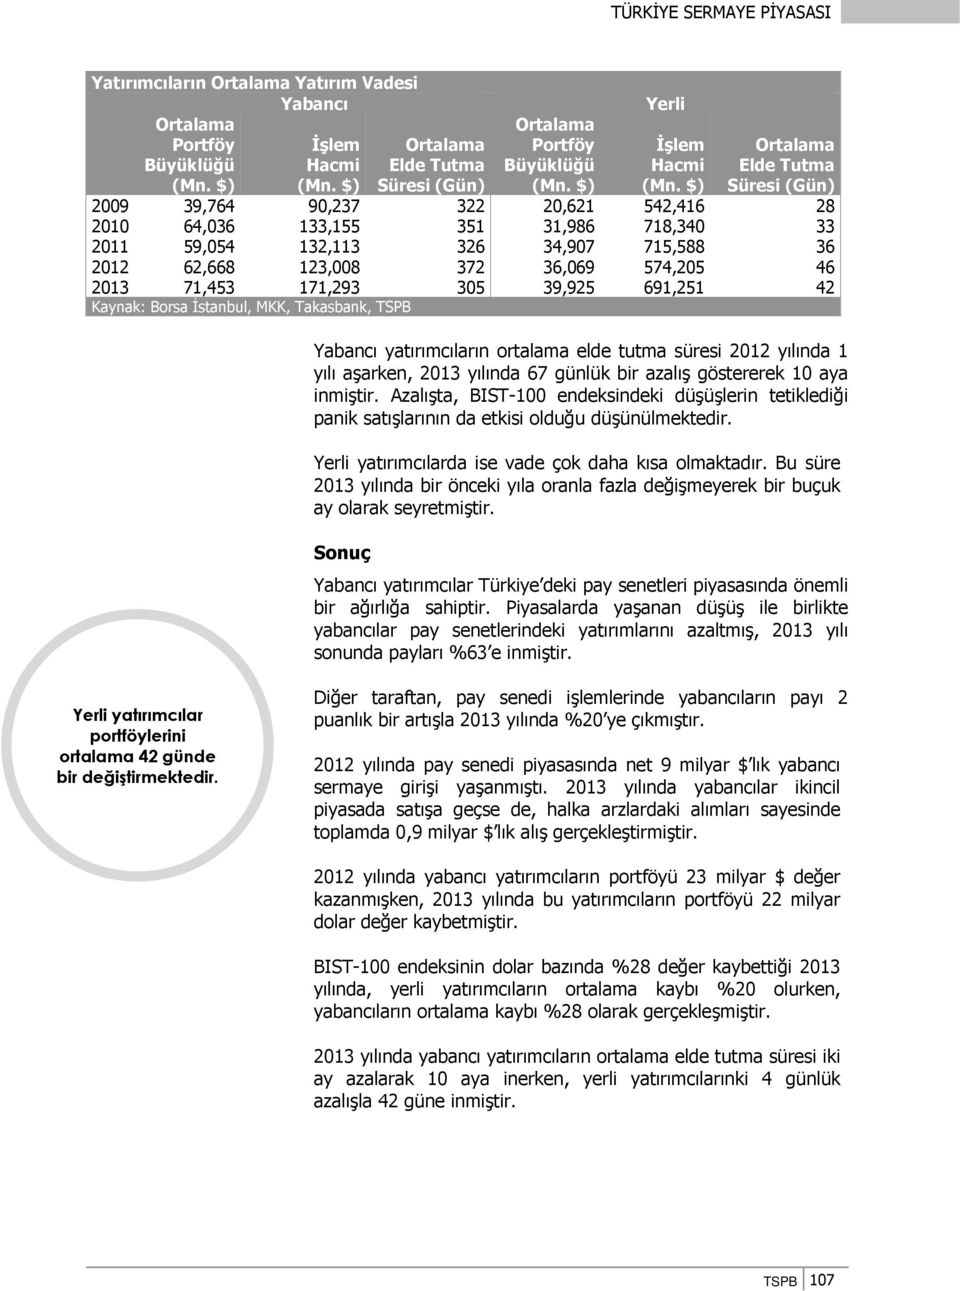 46 2013 71,453 171,293 305 39,925 691,251 42 Kaynak: Borsa İstanbul, MKK, Takasbank, TSPB Yabancı yatırımcıların ortalama elde tutma süresi 2012 yılında 1 yılı aşarken, 2013 yılında 67 günlük bir